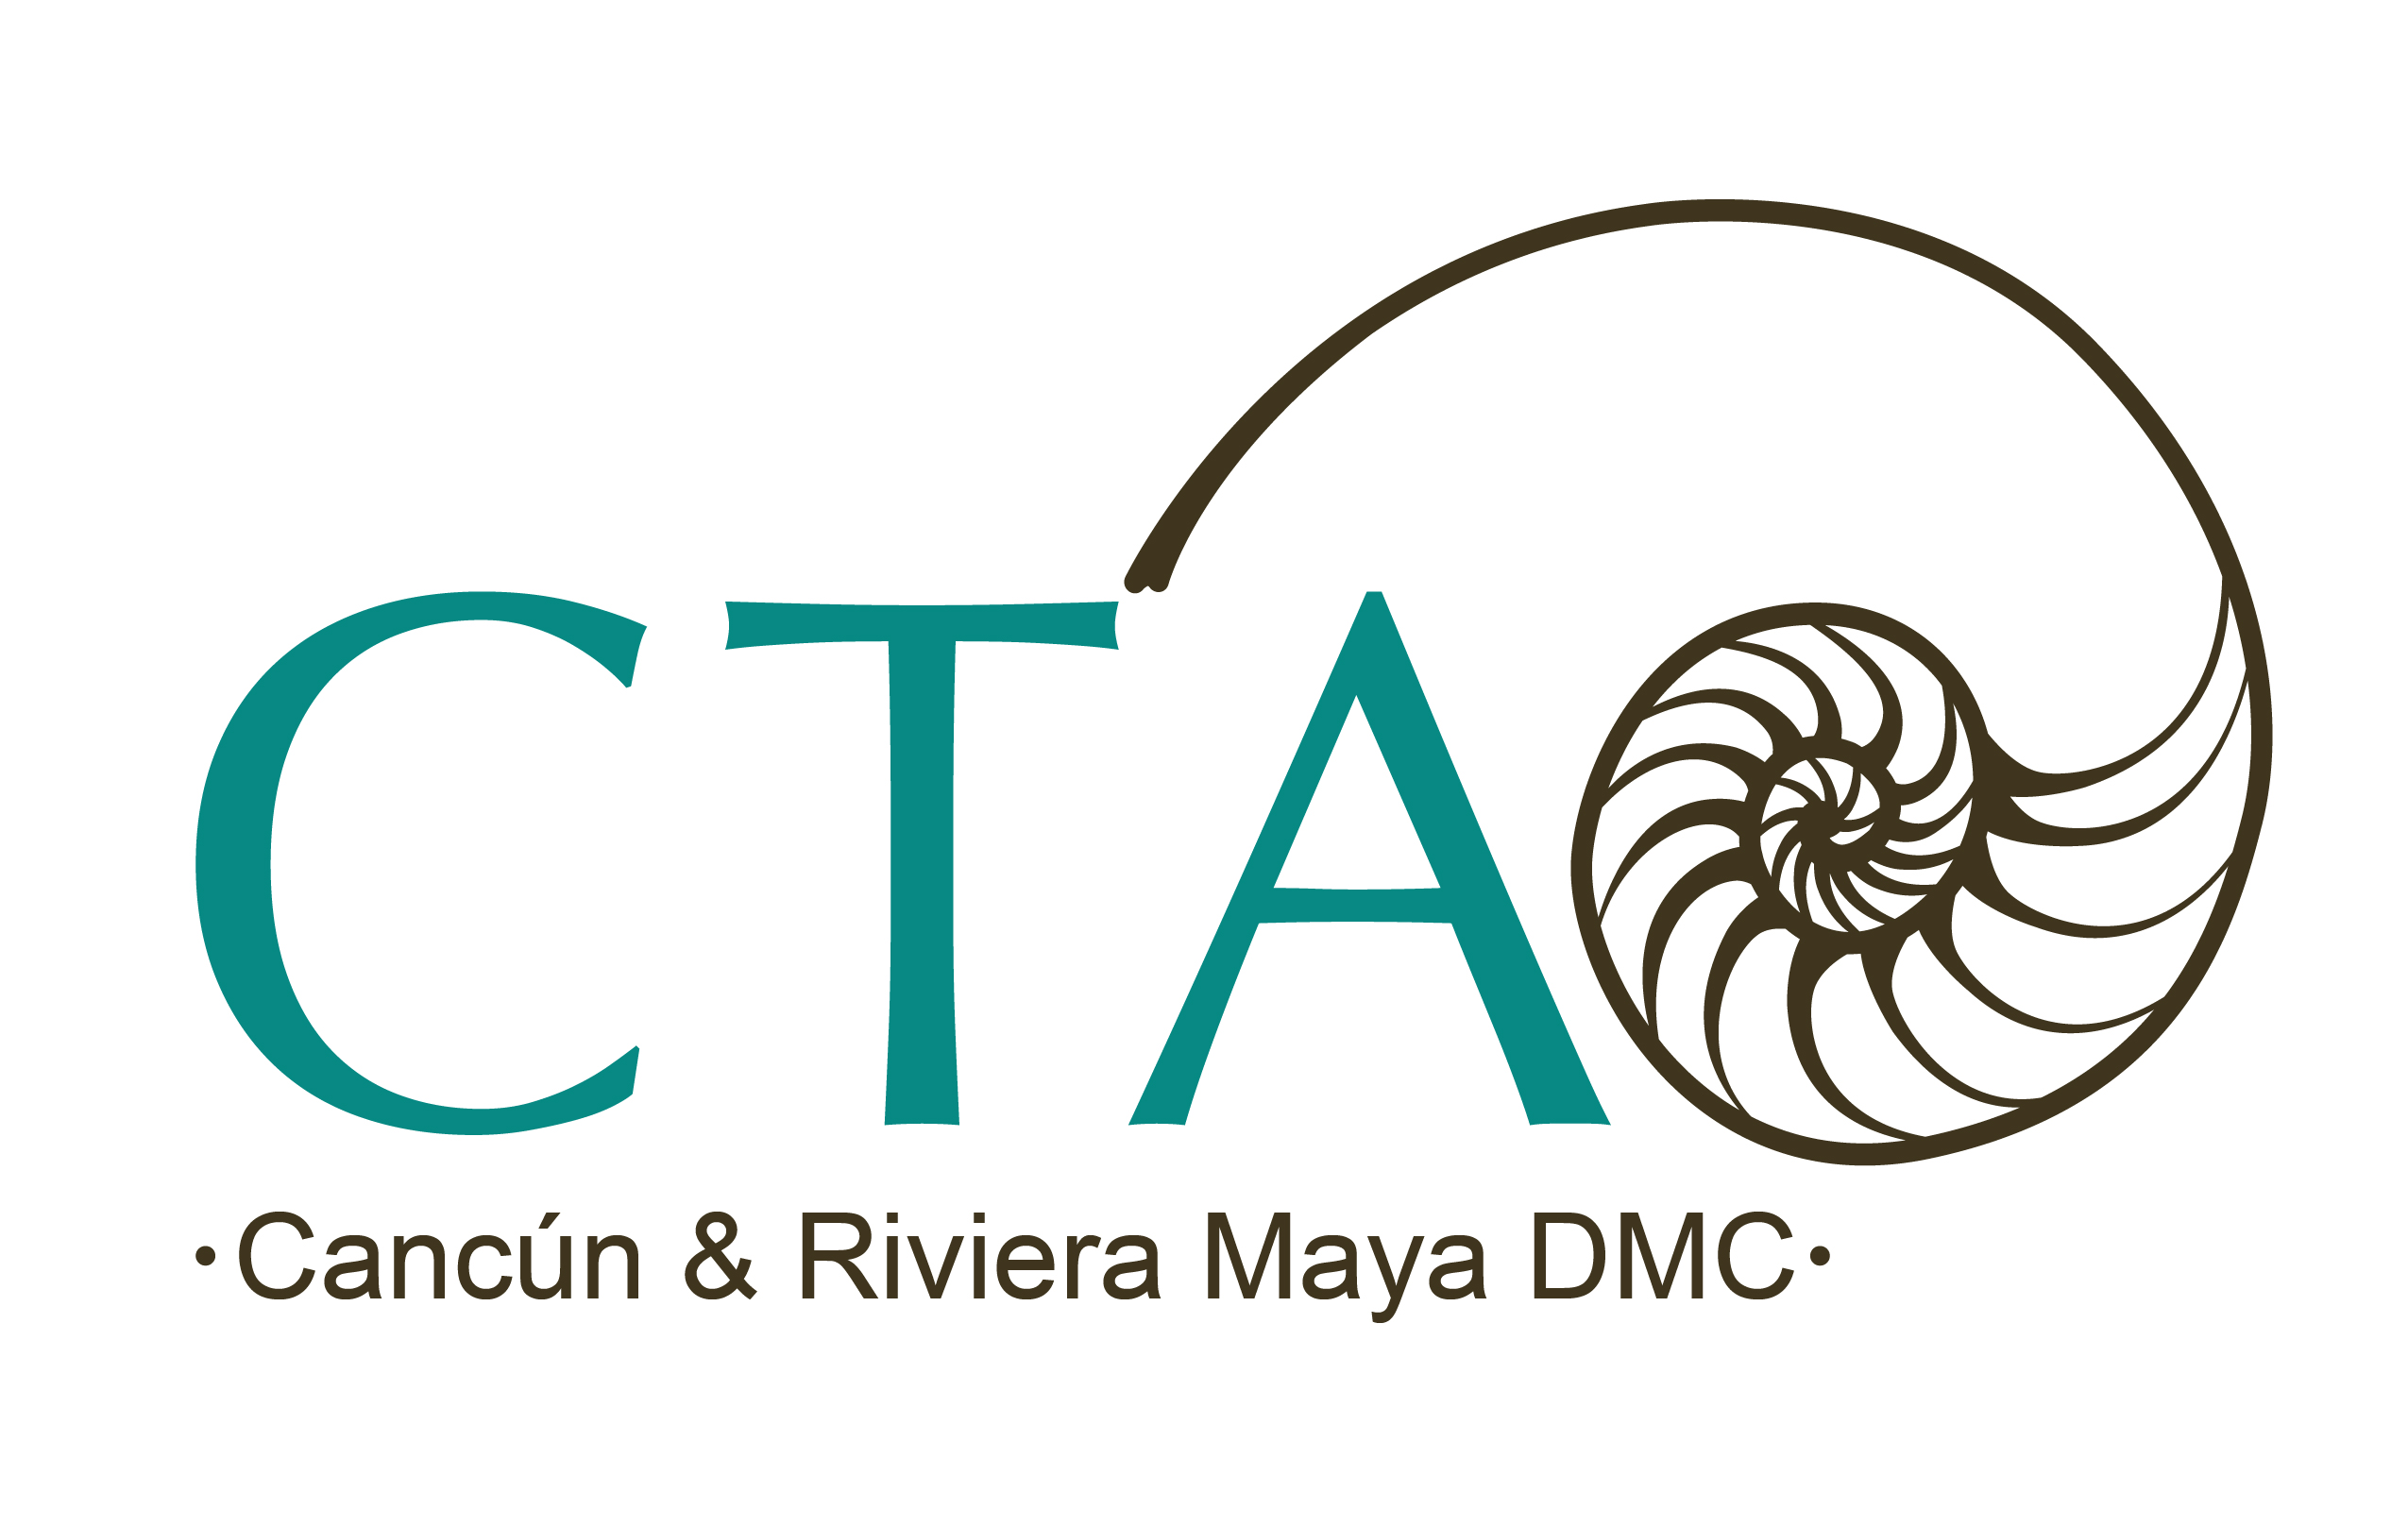 CTA Cancun & Riviera Maya DMC Logo